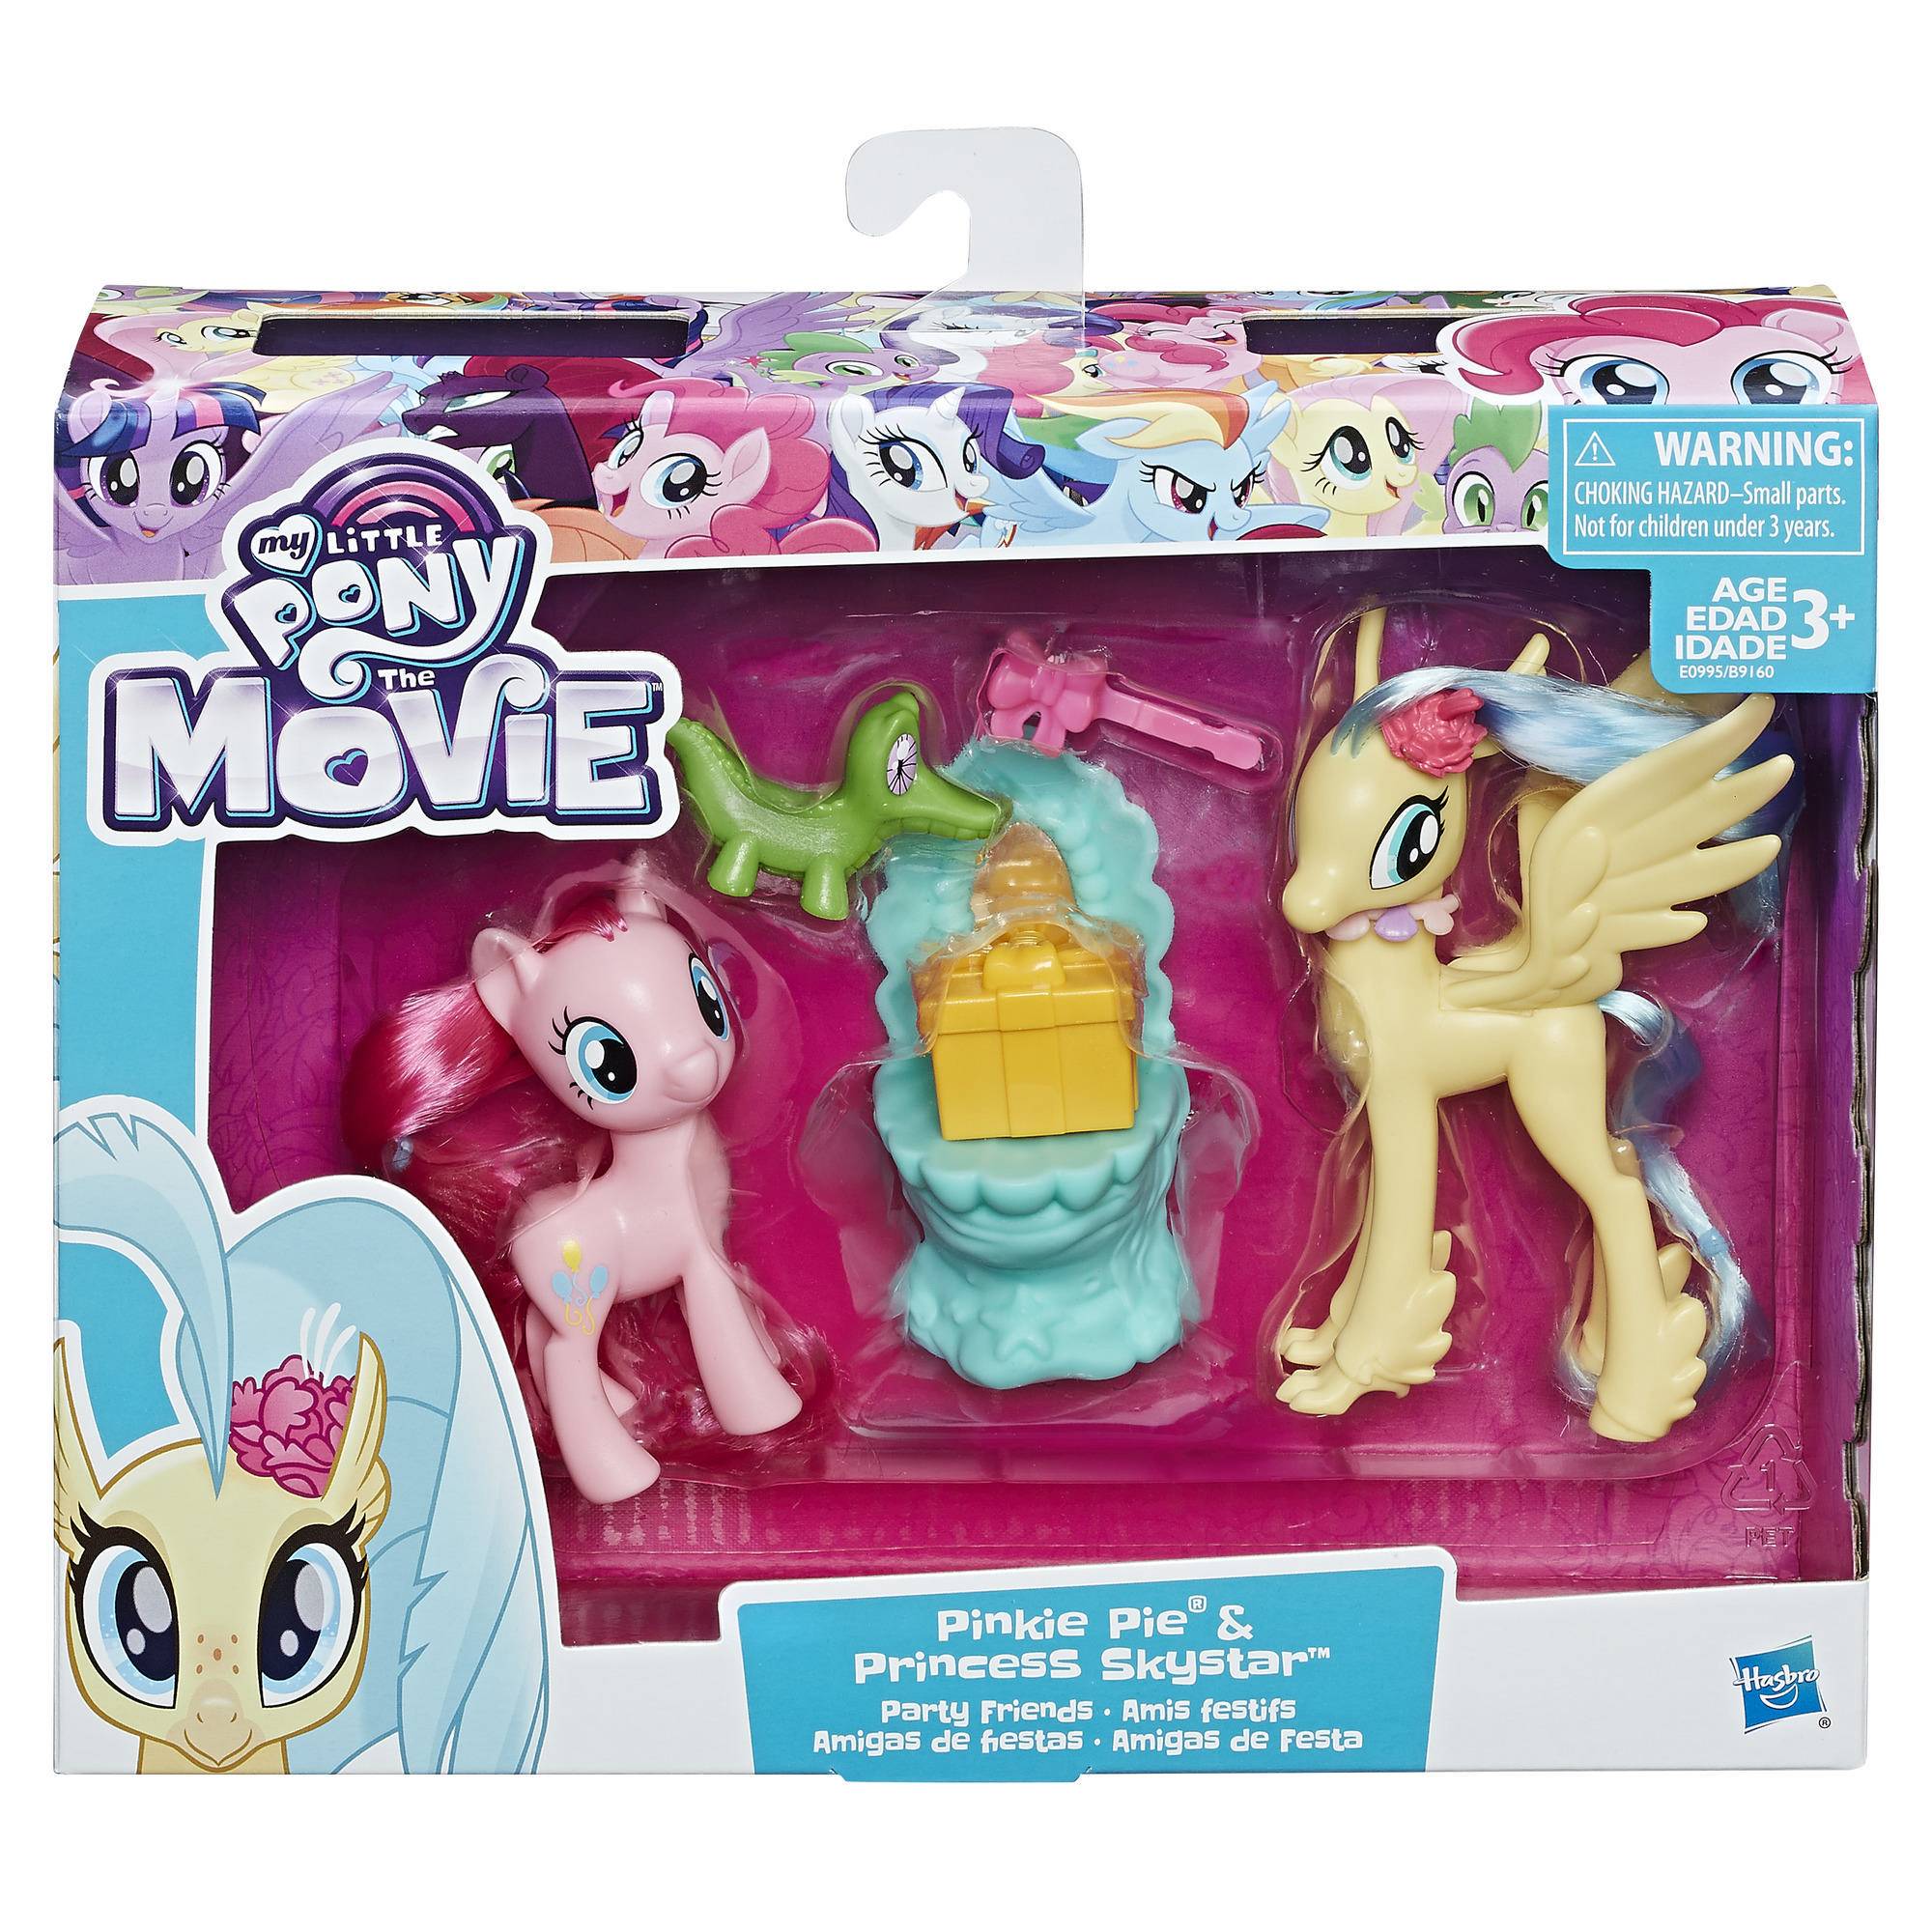 Новые игрушки май литл пони. Игровой набор Hasbro my little Pony. Игровой набор Hasbro принцесса Скайстар c1835. Принцесса Скайстар пони игрушка. Игровой набор Hasbro Pinkie pie a3544.